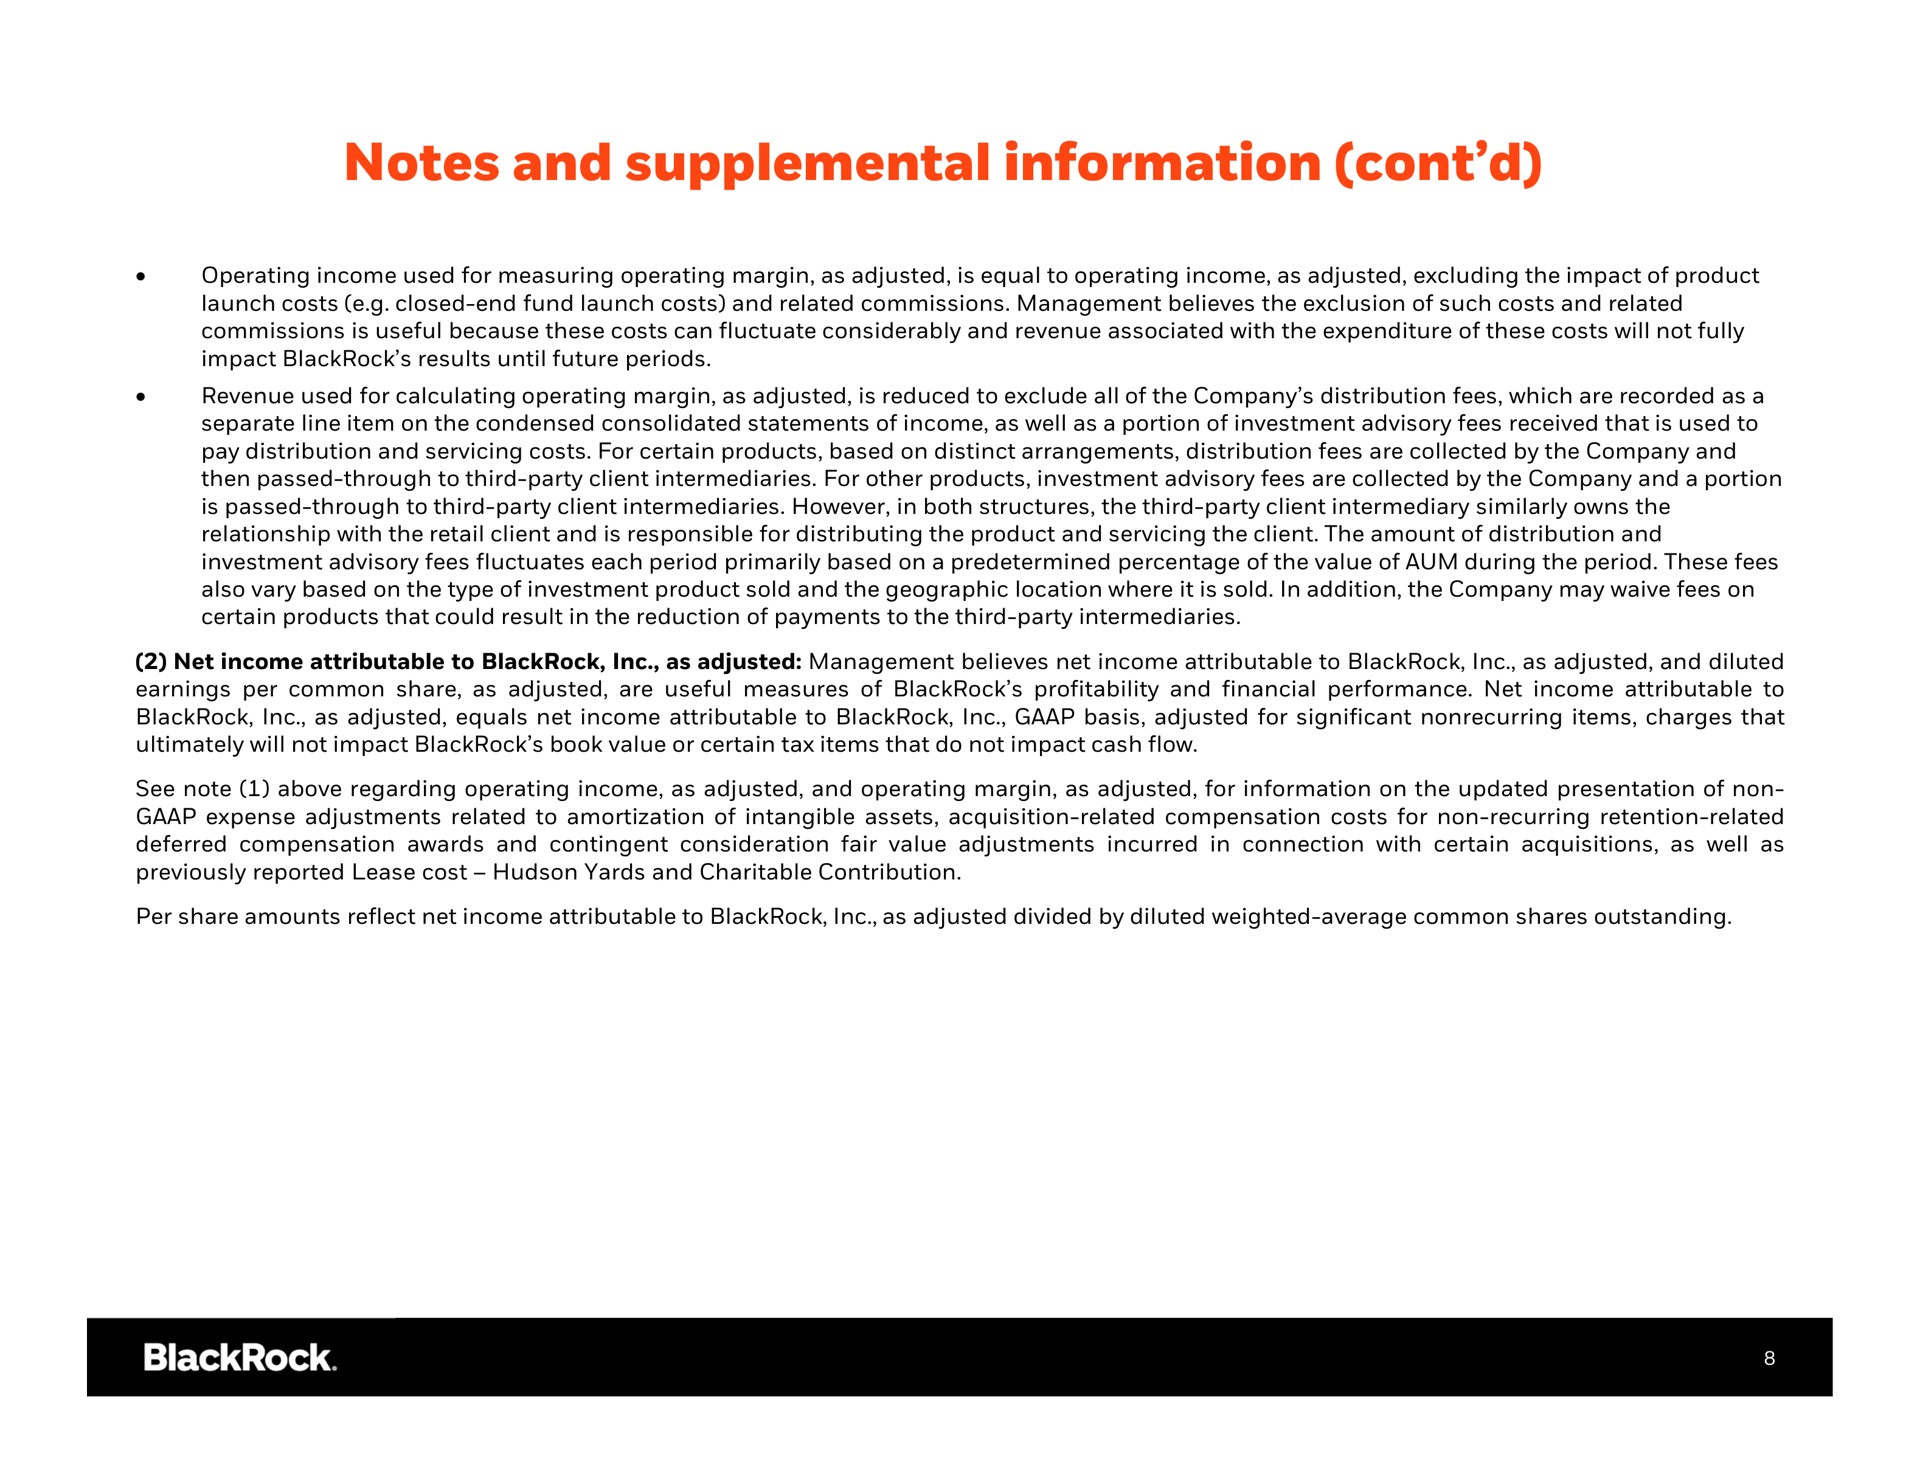 notes and supplemental information | BlackRock